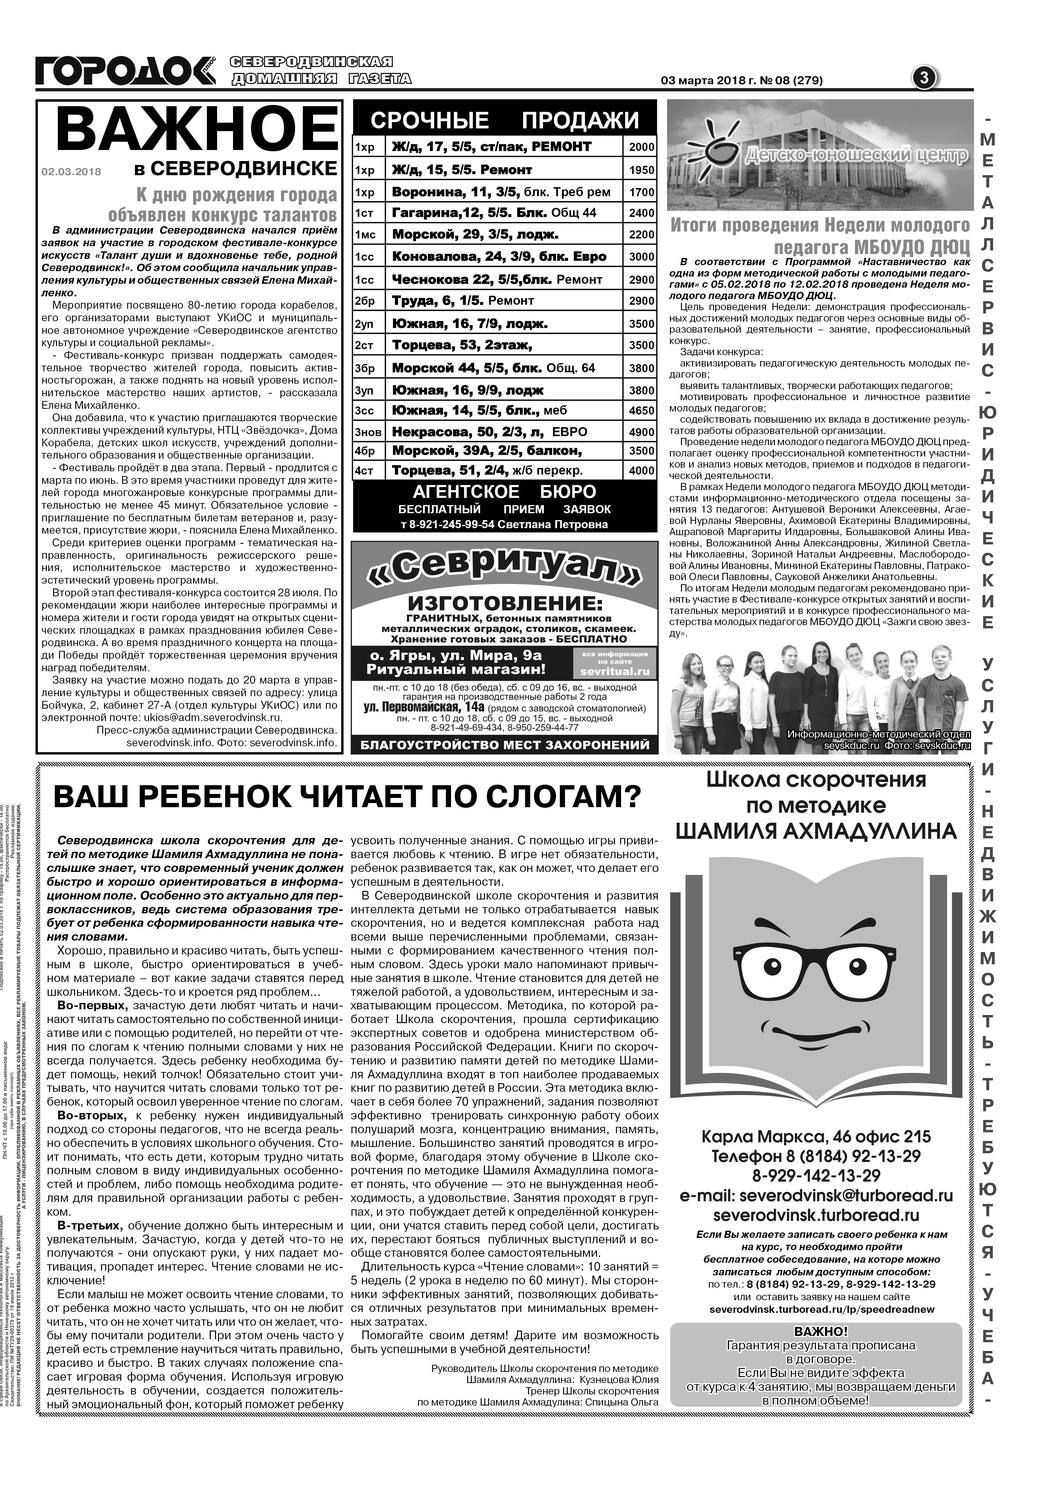 Городок плюс, выпуск номер 8 от 03 марта 2018 года, страница 3.